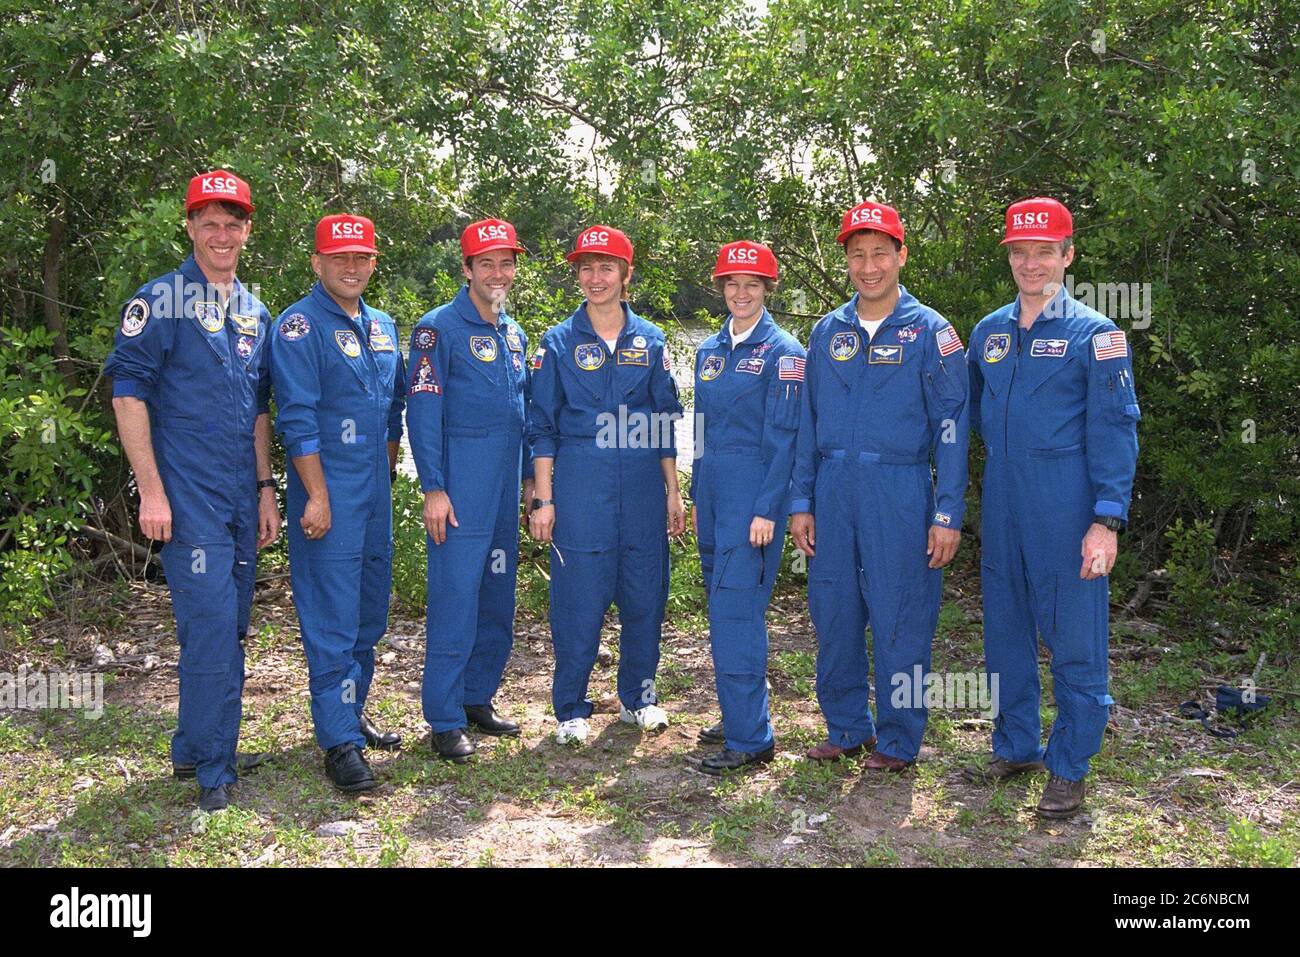 Arborant fièrement des chapeaux rouges KSC Fire/Rescue, les membres de l'équipage de la STS-84 font une pause pour une photographie de groupe tout en participant aux activités de test de démonstration du compte à rebours terminal (TCDT). De gauche à droite, sont présents les spécialistes de mission C. Michael Foale, Carlos I. Noriega, Jean-François Clervoy de l'Agence spatiale européenne et Elena V. Kondakova de l'Agence spatiale russe; et le pilote Eileen Marie Collins, le spécialiste de mission Edward Tsang lu et le commandant Charles J. Precourt. Banque D'Images